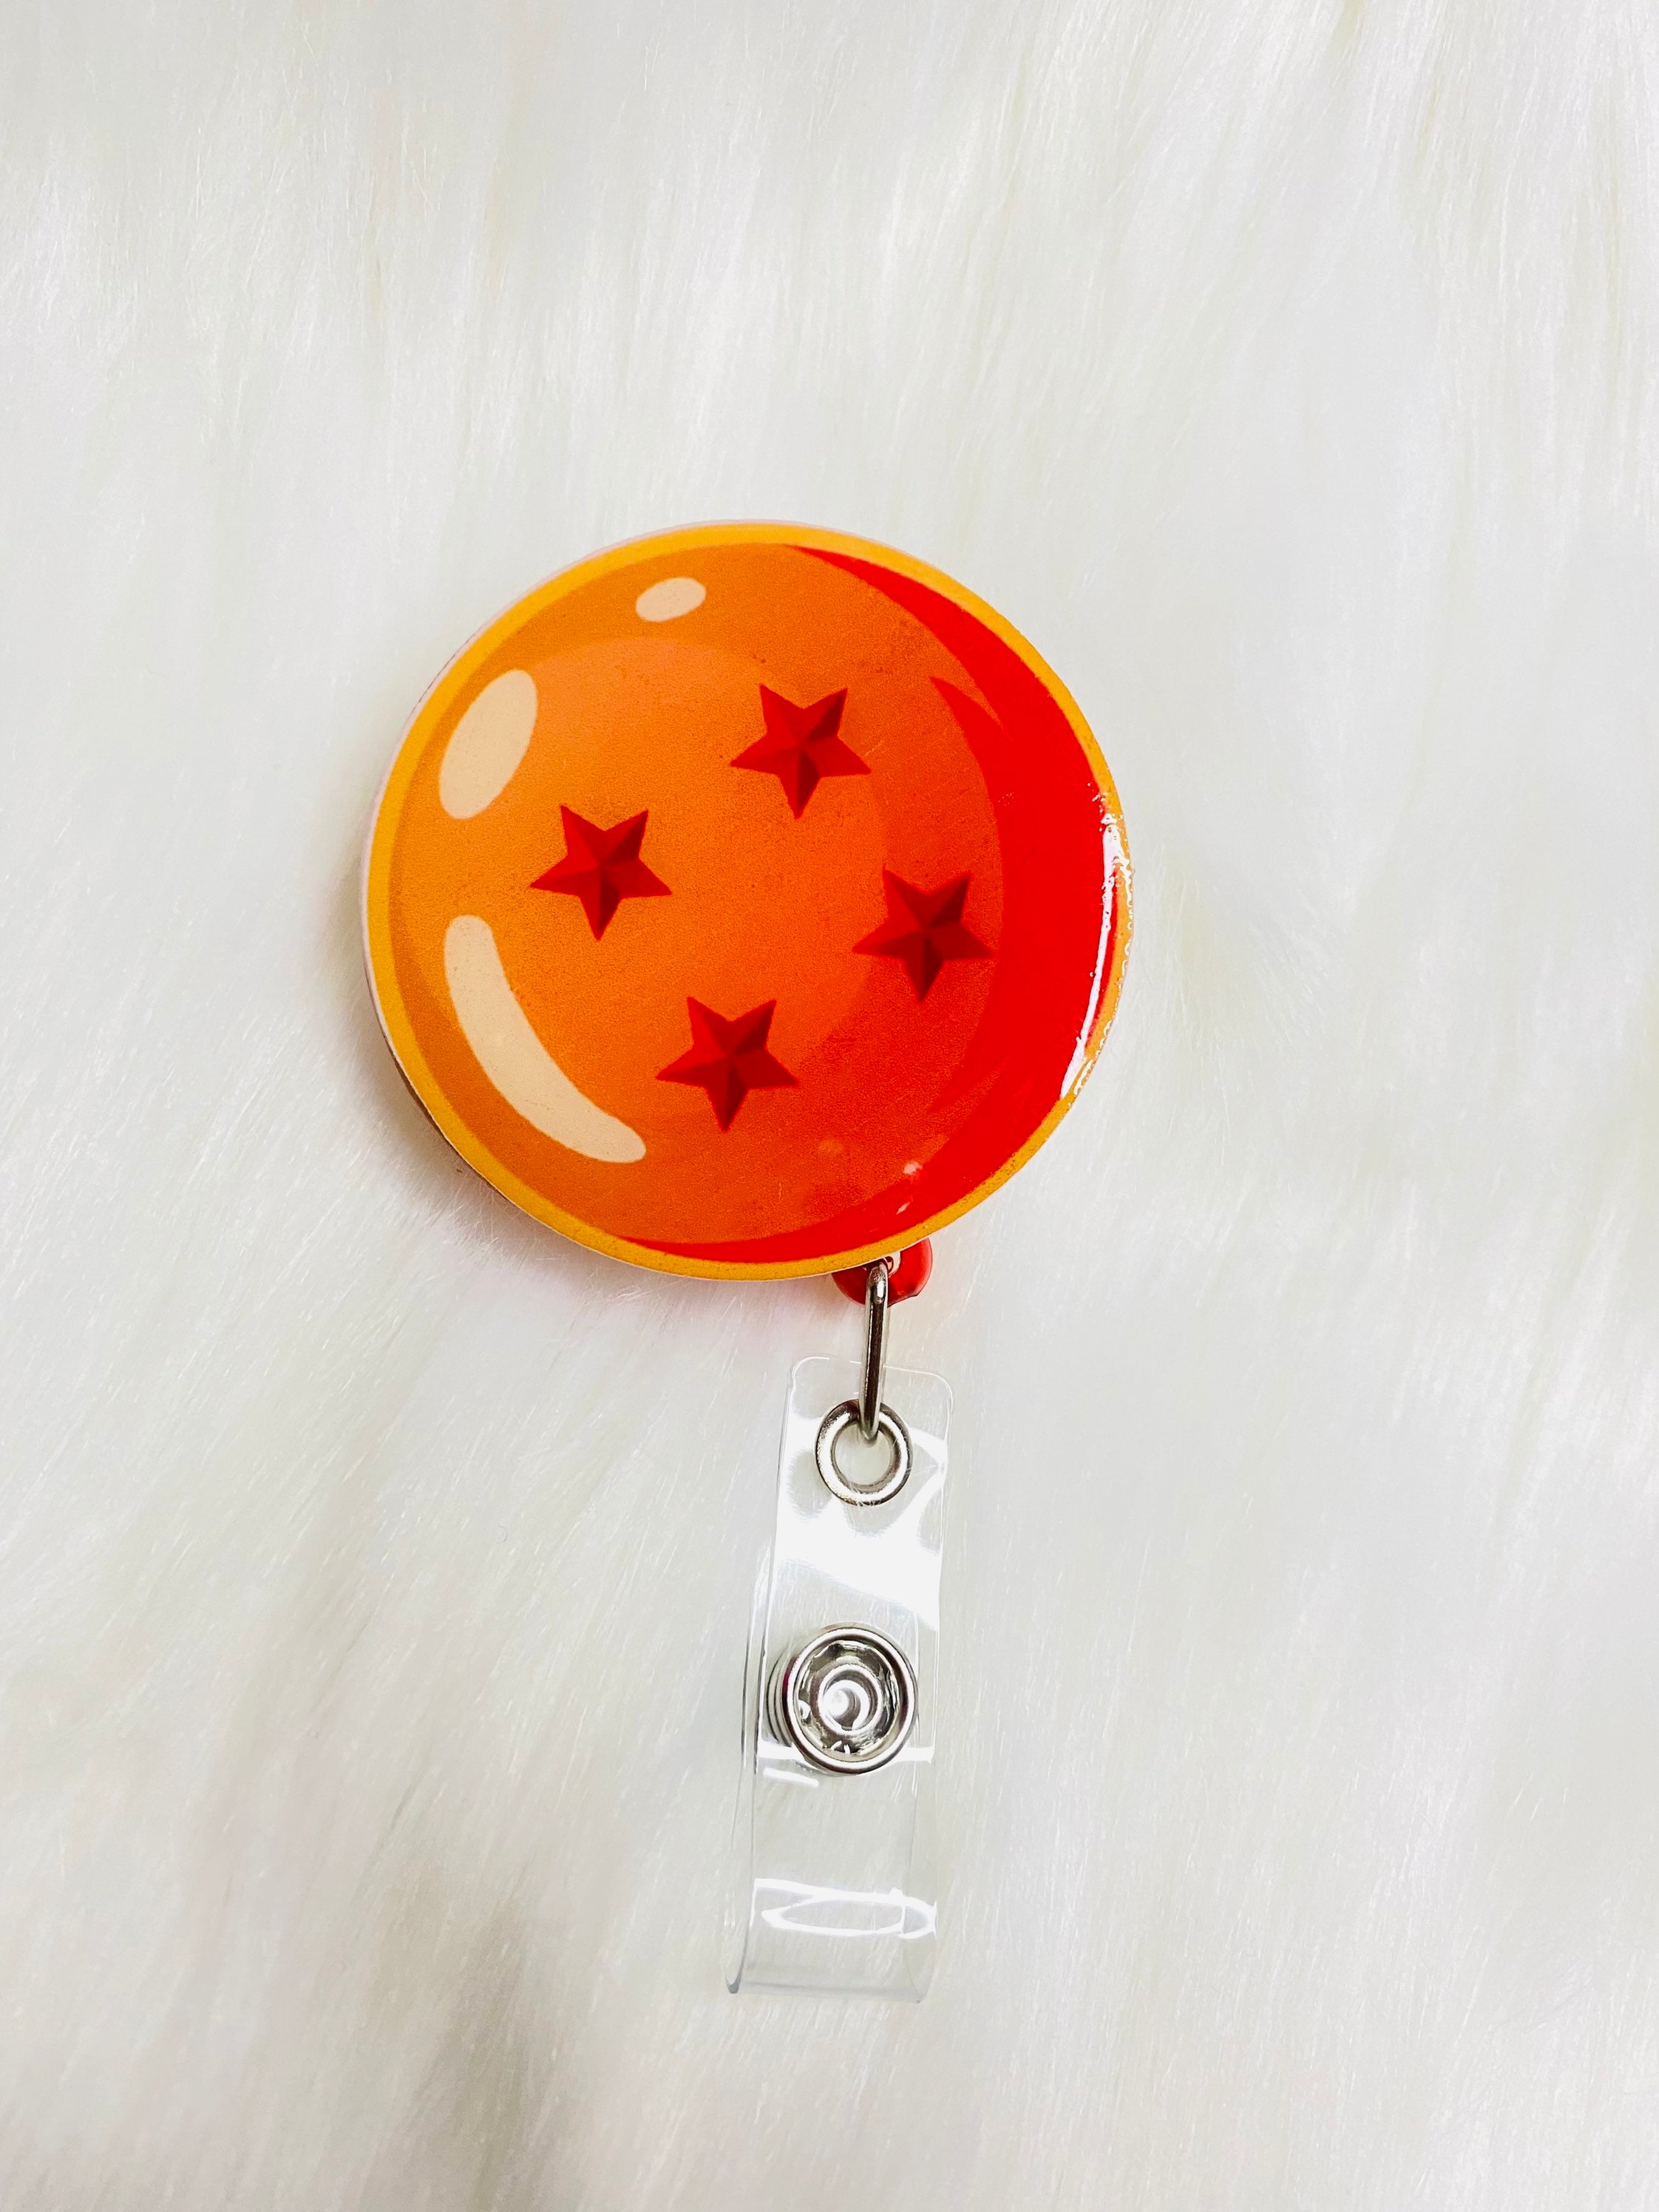 Anime Dragon Ball Z 4starbadge Reel/badge Holder/id Holder/name